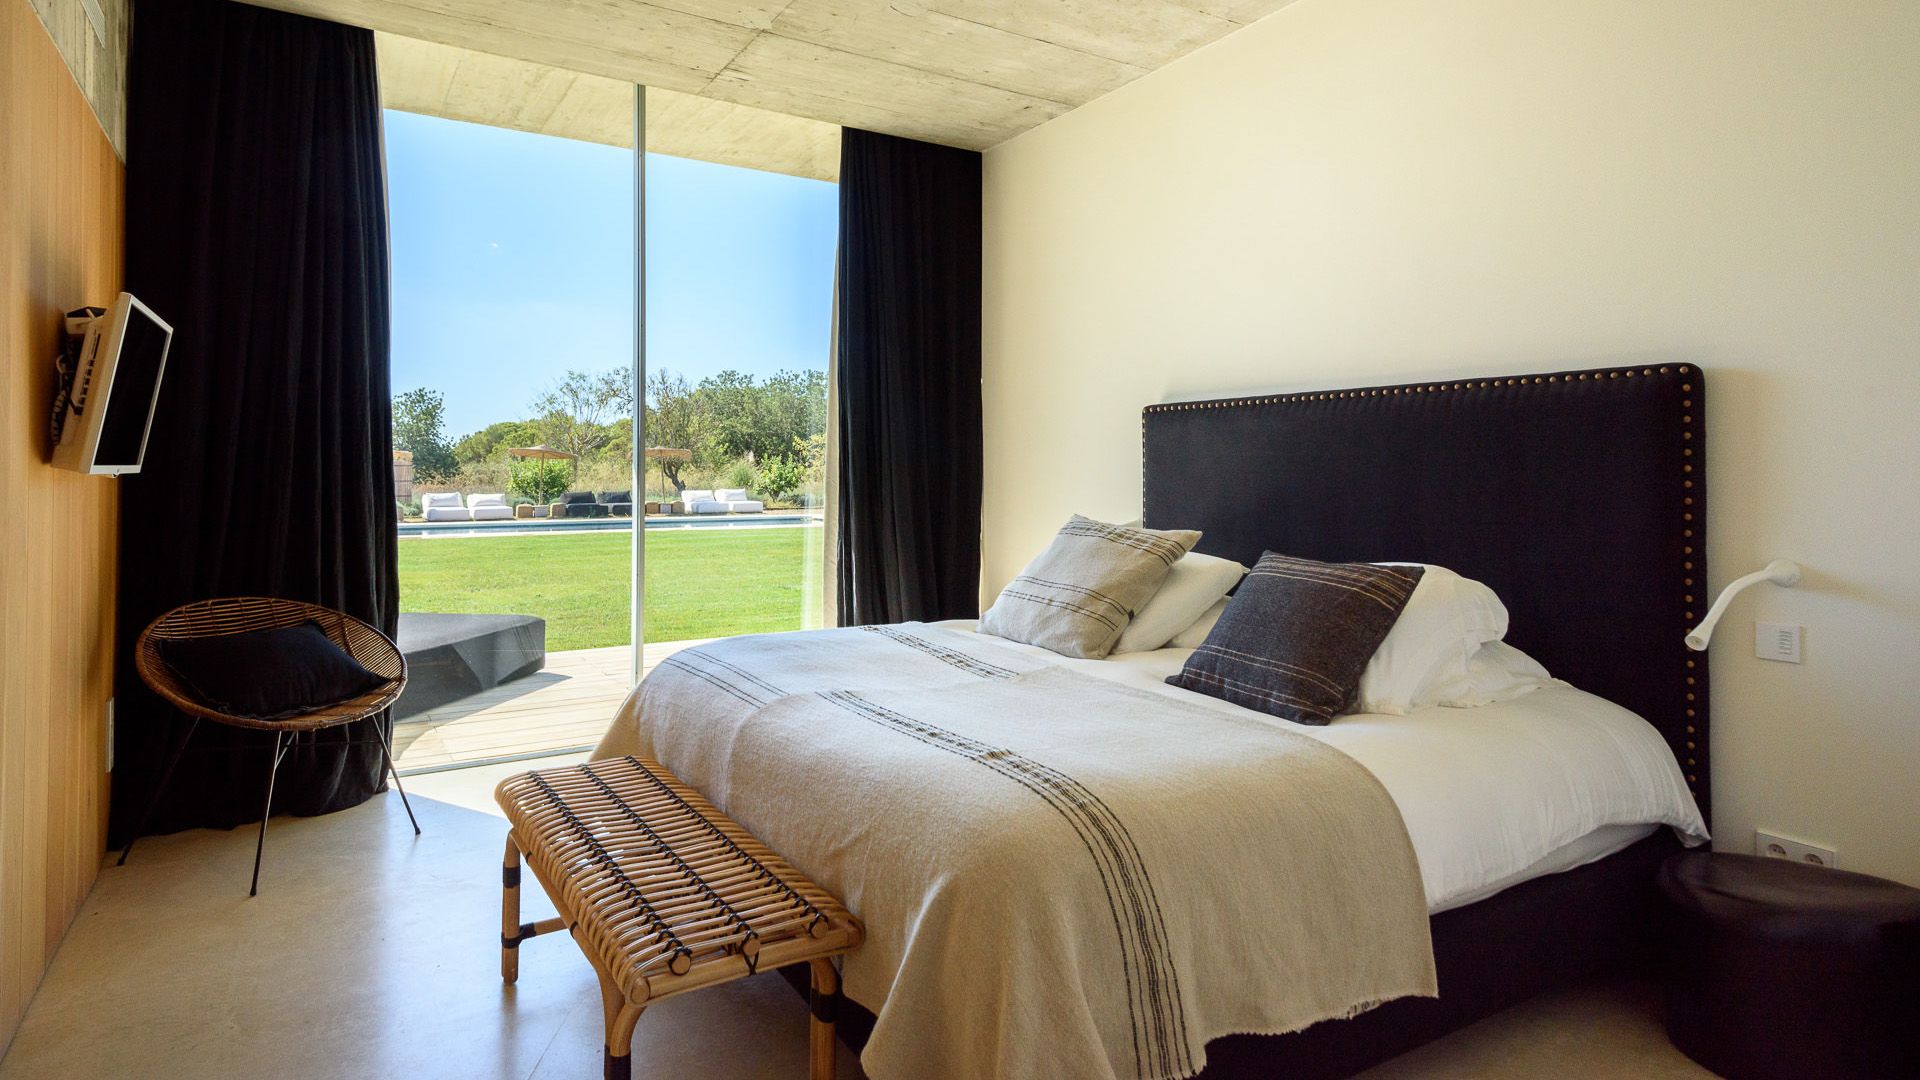 Villa Los Amigos, San Lorenzo, 5 bedrooms, Ibiza, Luxury Villa, Holiday Villa, 5 bedroom luxury villa close to Ibiza town